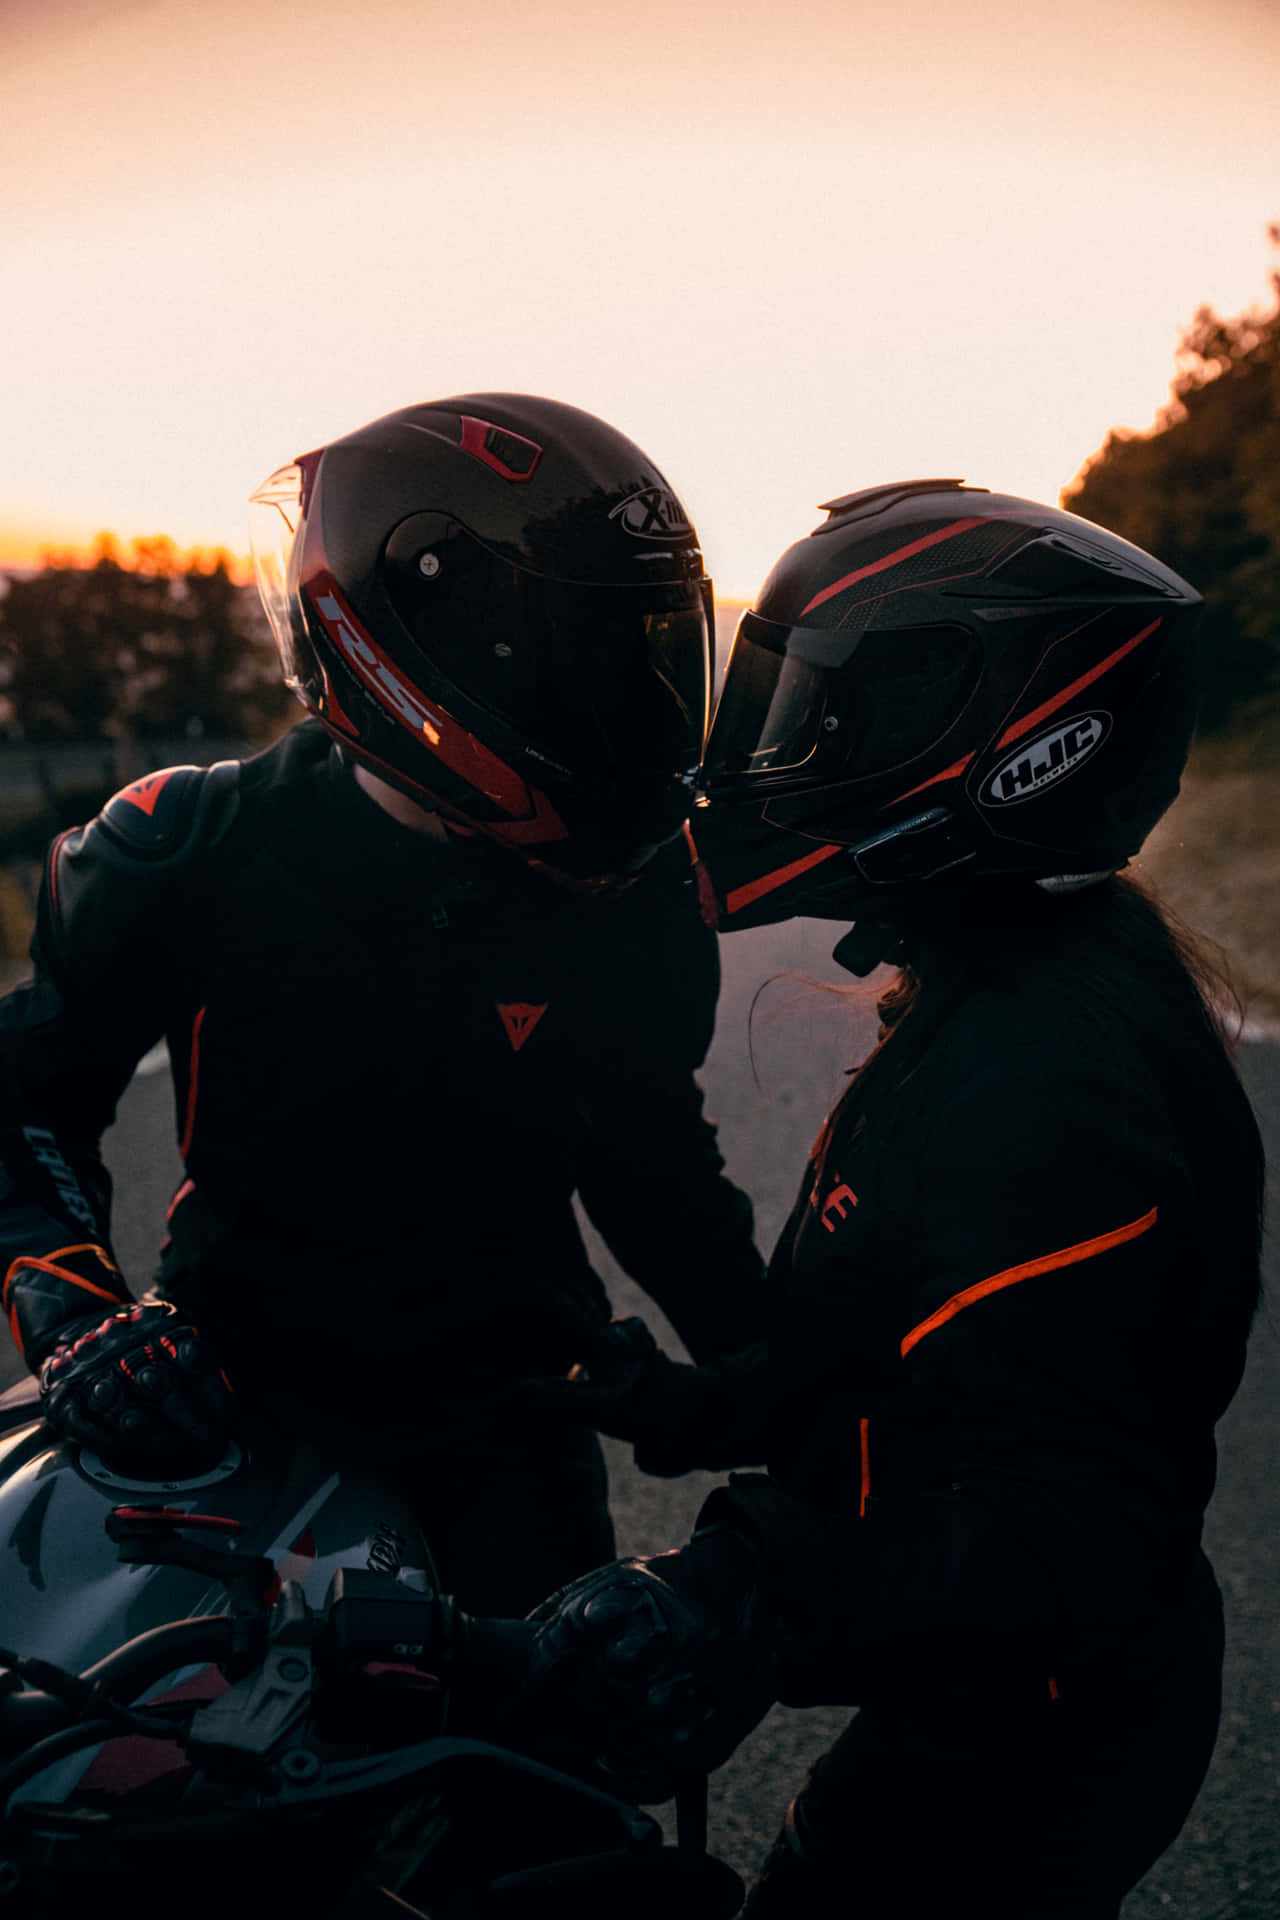 Couple Biker Helmet Pictures